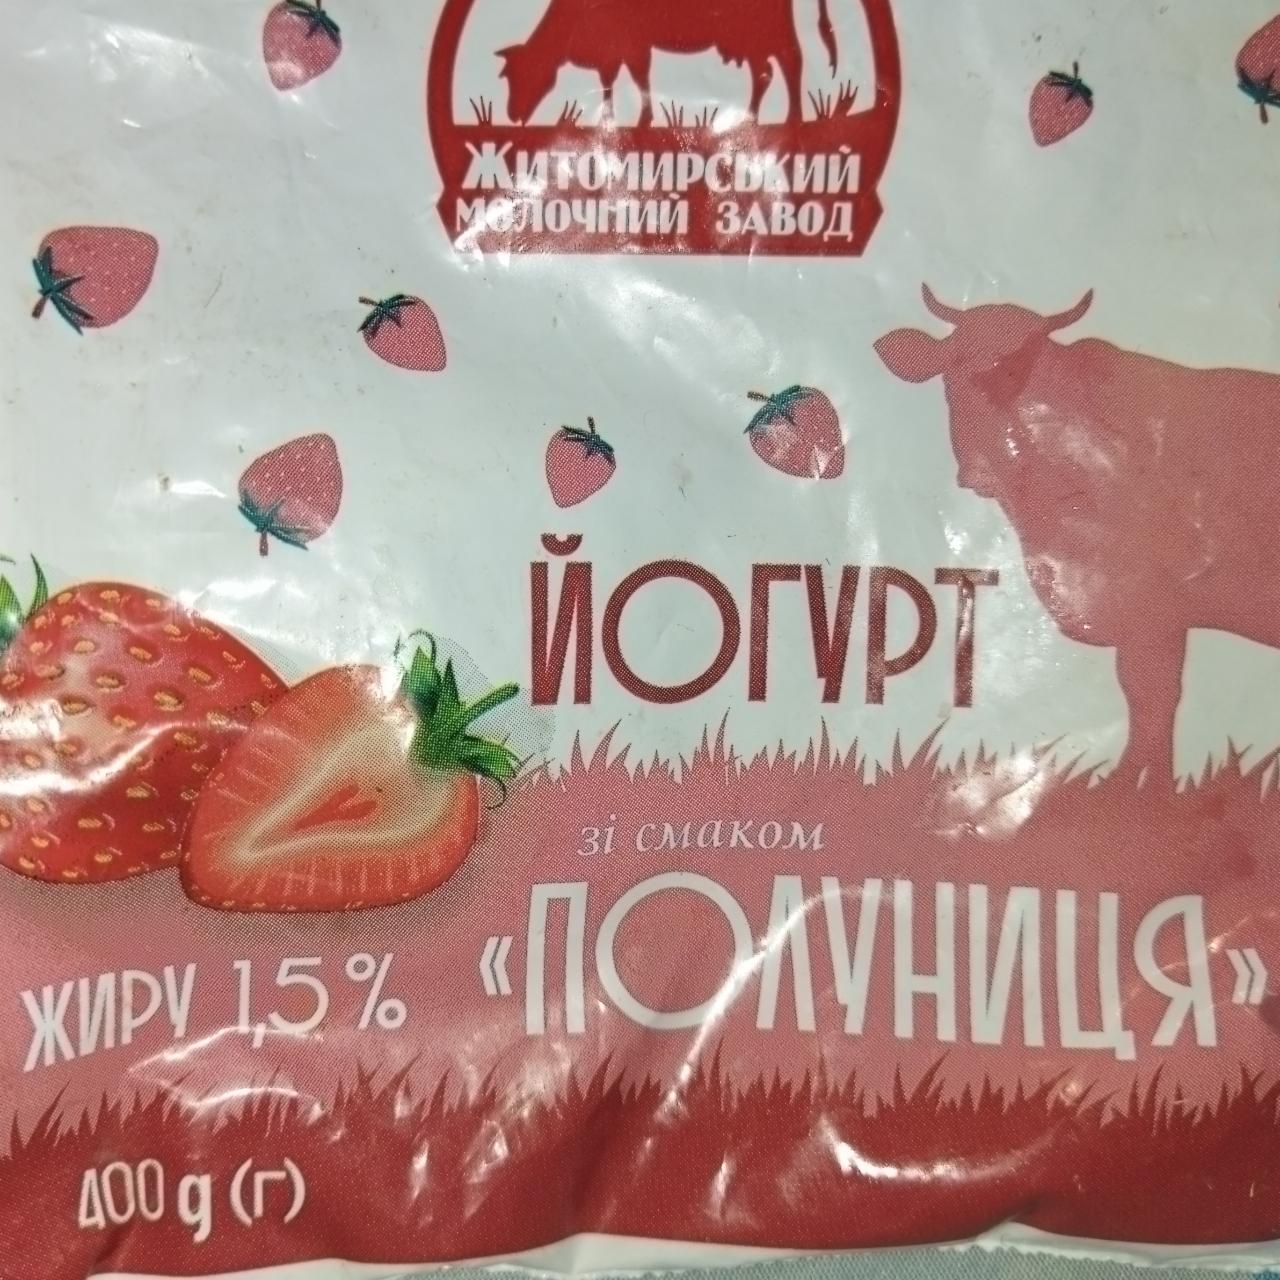 Фото - Йогурт 1.5% зі смаком полуниці Житомирський молочний завод